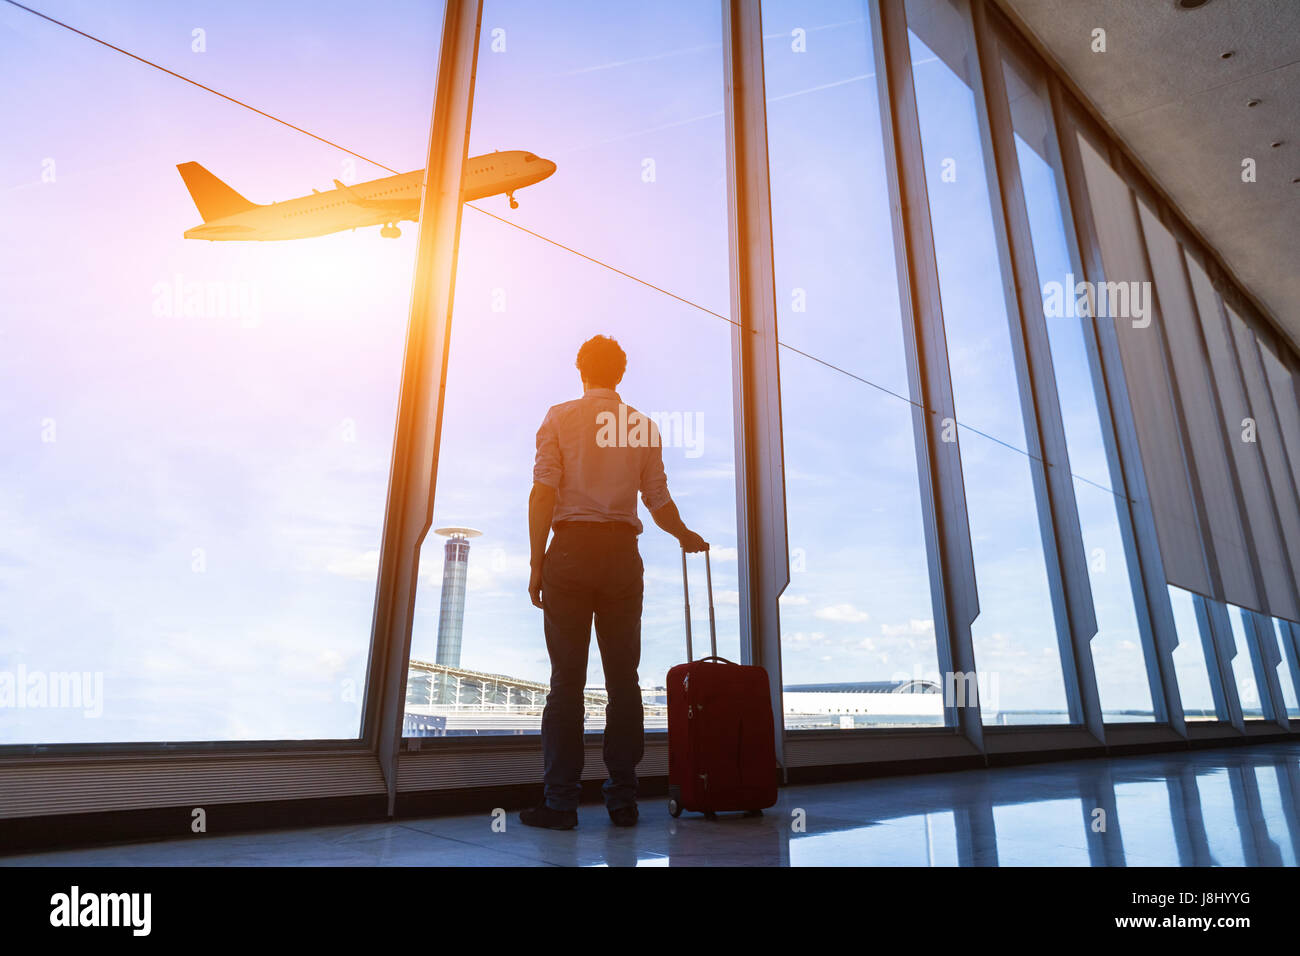 Geschäftsmann mit Koffer am Flughafen internationalen Abflug-Gate fliegen Flugzeug durch die Fenster schauen Stockfoto